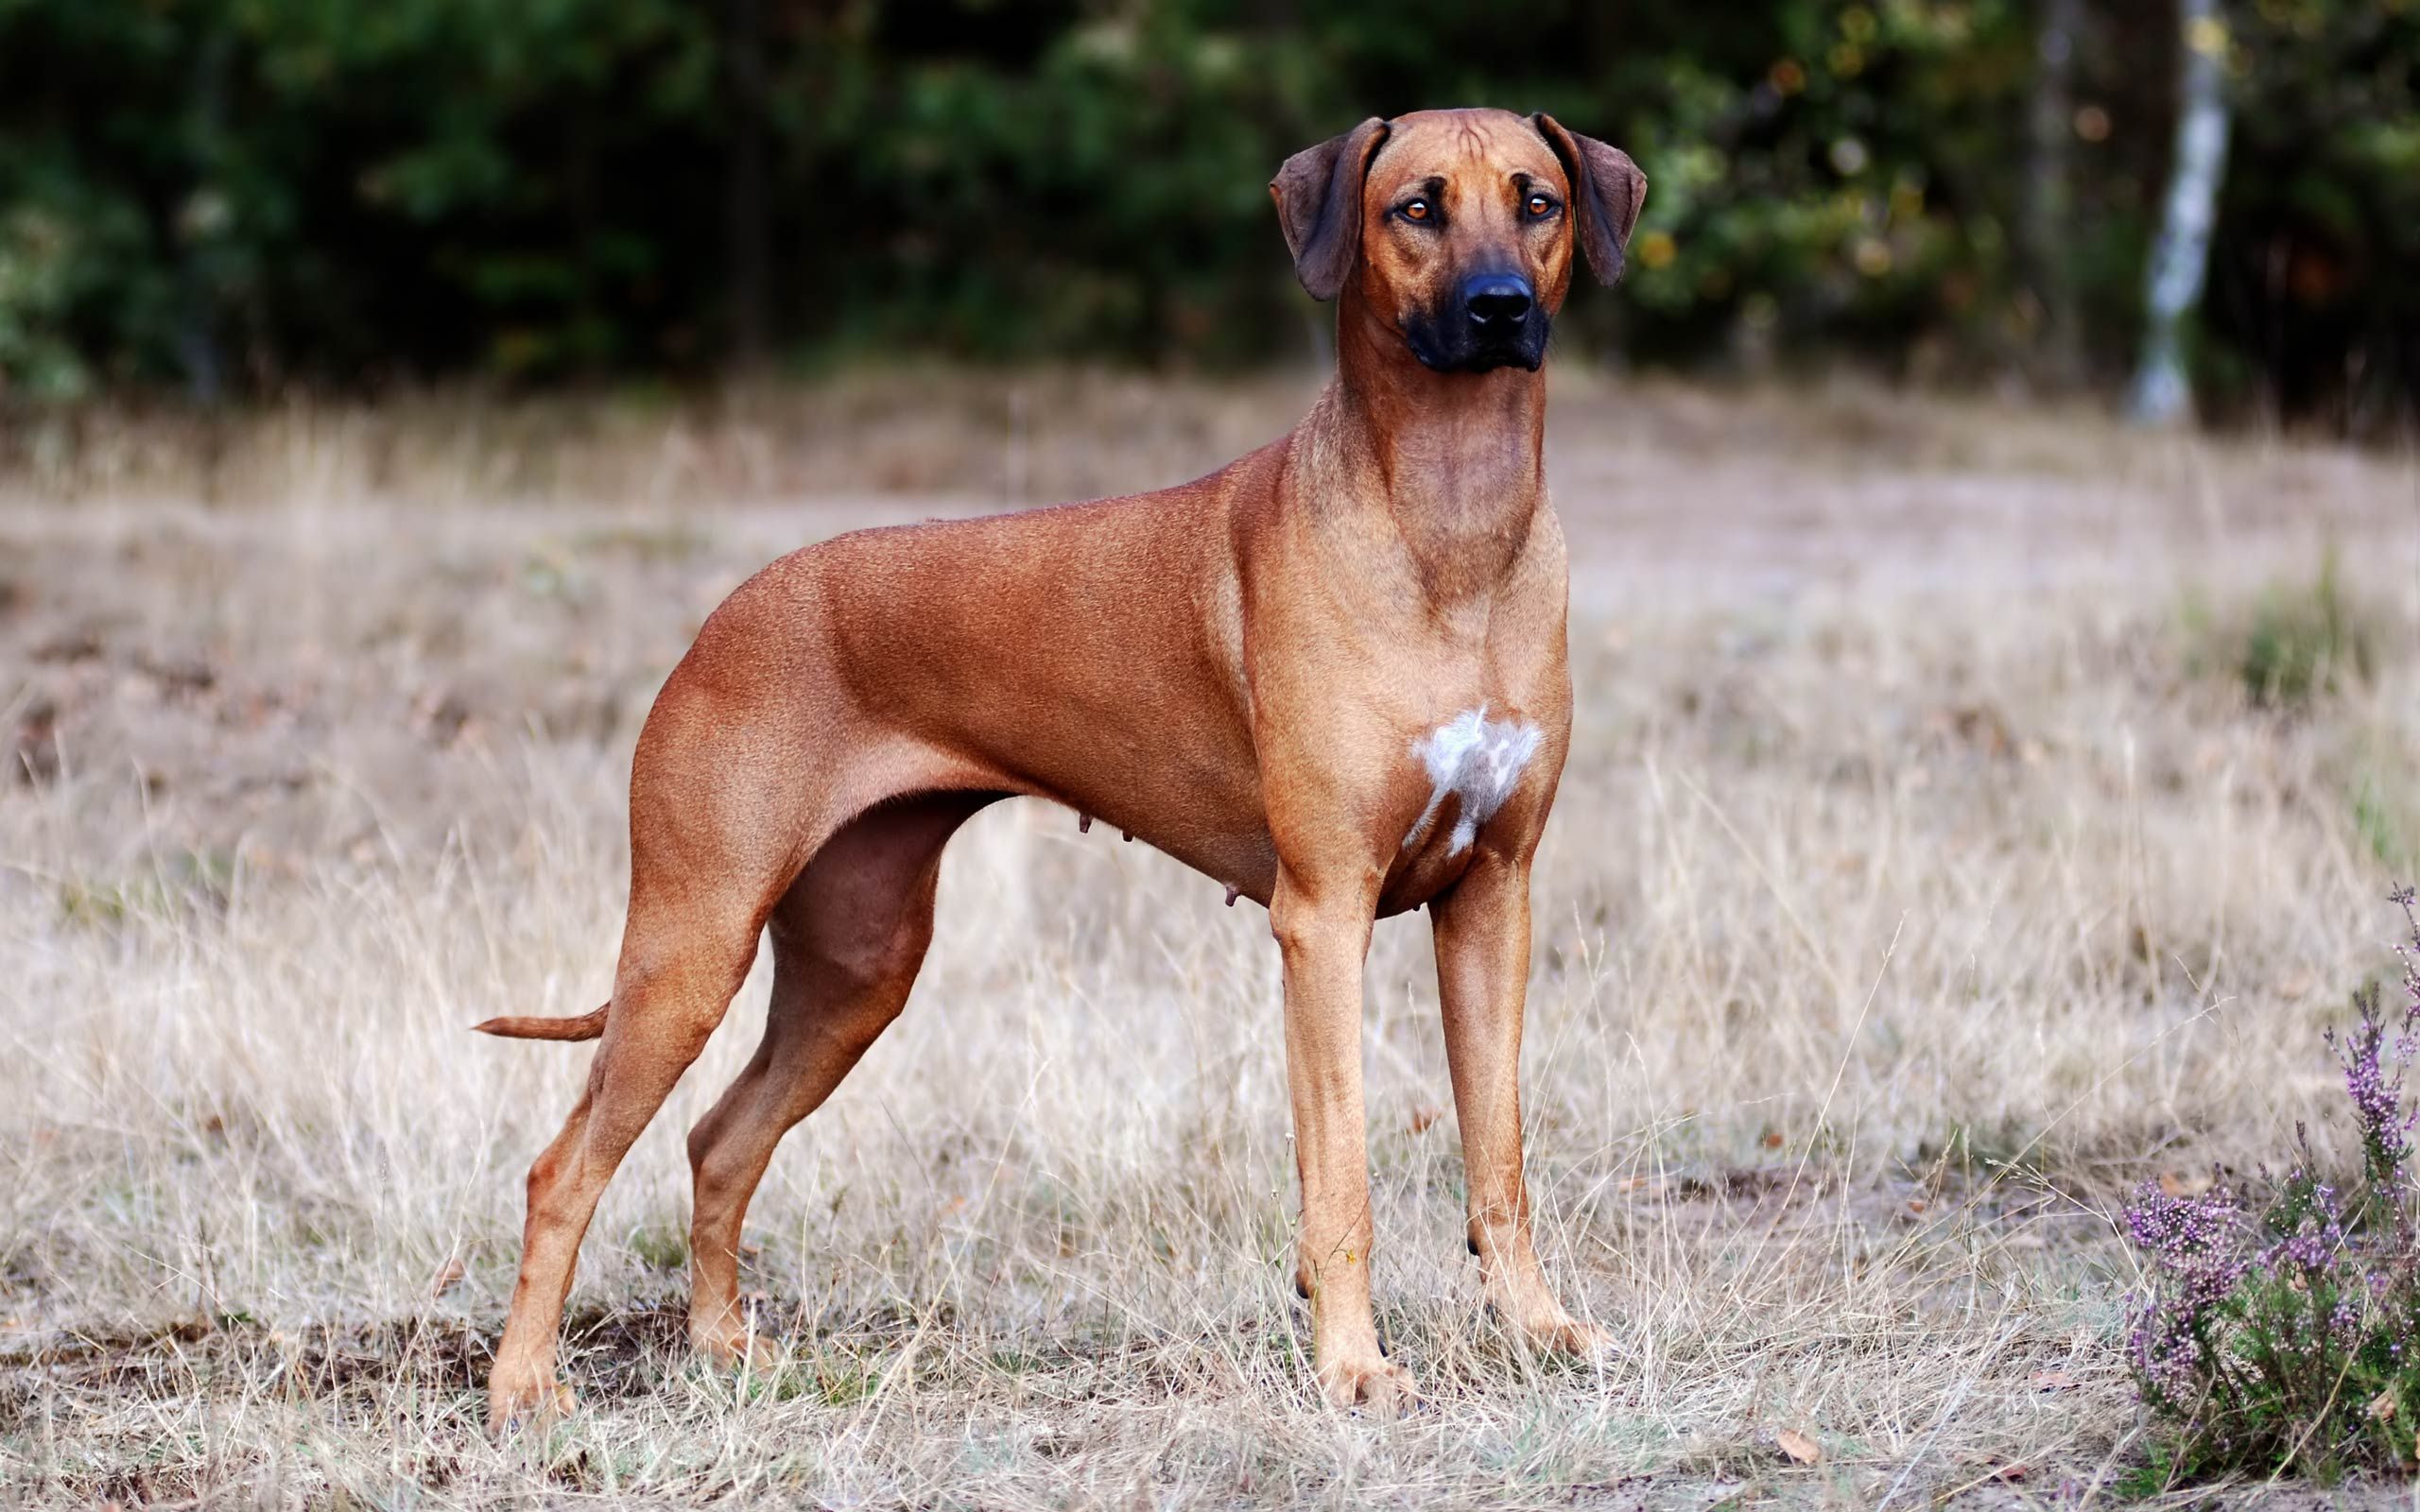 rhodesian ridgeback. Dogs, Hound dog, Large dog breeds